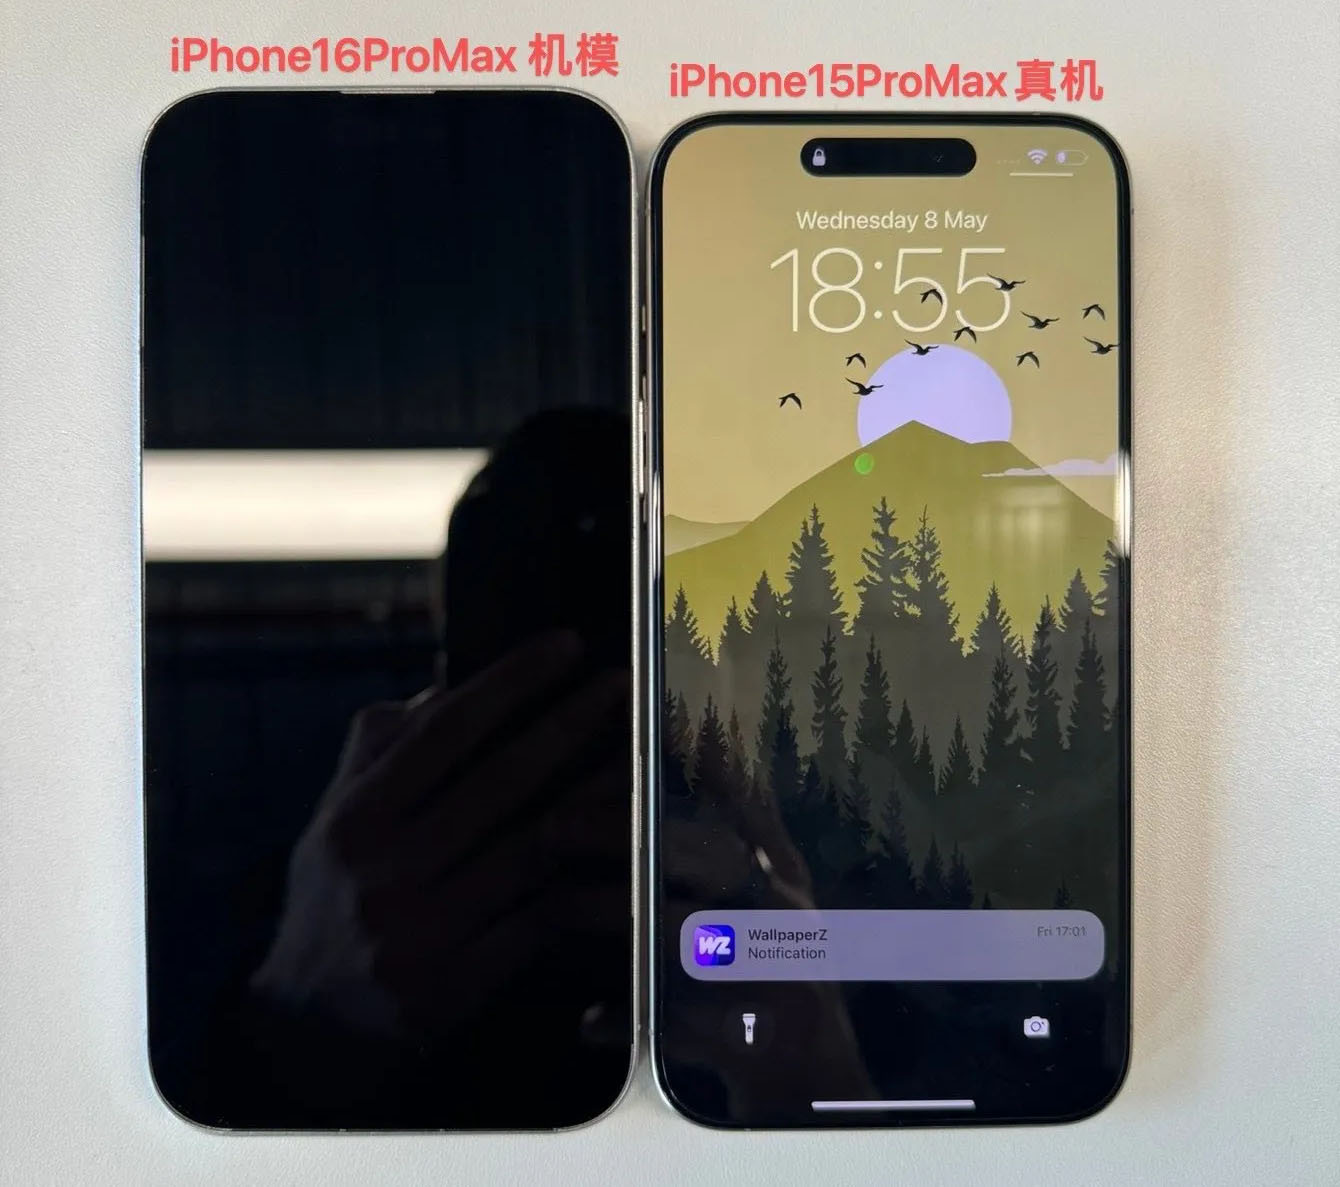 iPhone 16 Pro Max’in Maketleri Ortaya Çıktı: iPhone 15 Pro Max’ten Ne Kadar Büyük Olacağı Belli Oldu